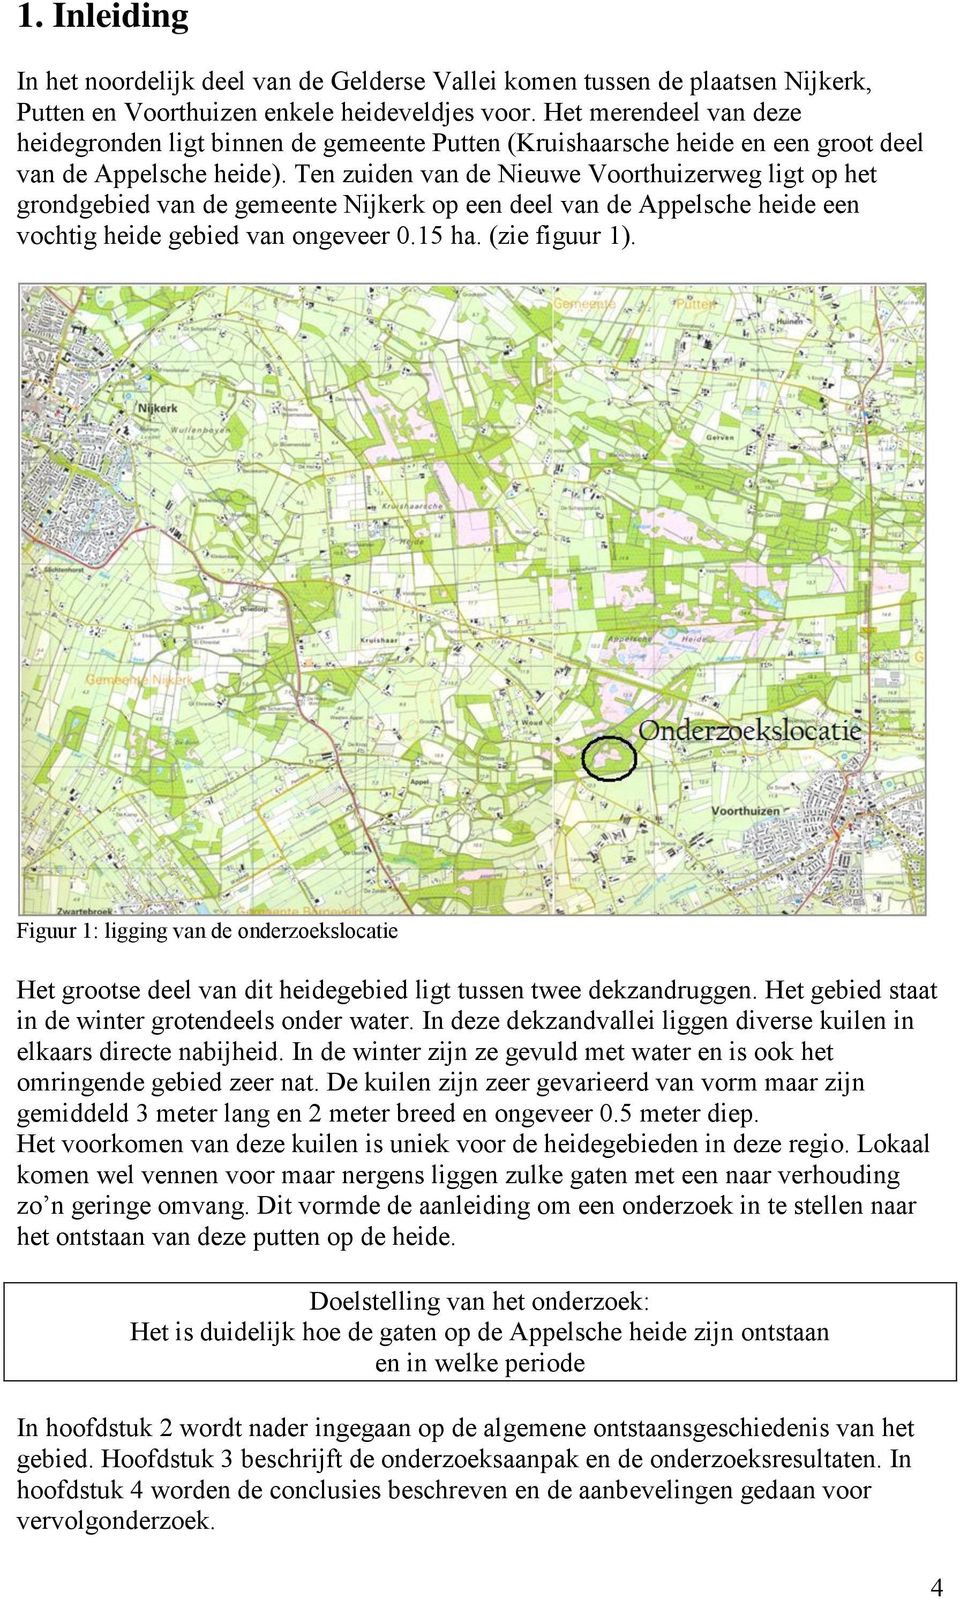 Ten zuiden van de Nieuwe Voorthuizerweg ligt op het grondgebied van de gemeente Nijkerk op een deel van de Appelsche heide een vochtig heide gebied van ongeveer 0.15 ha. (zie figuur 1).